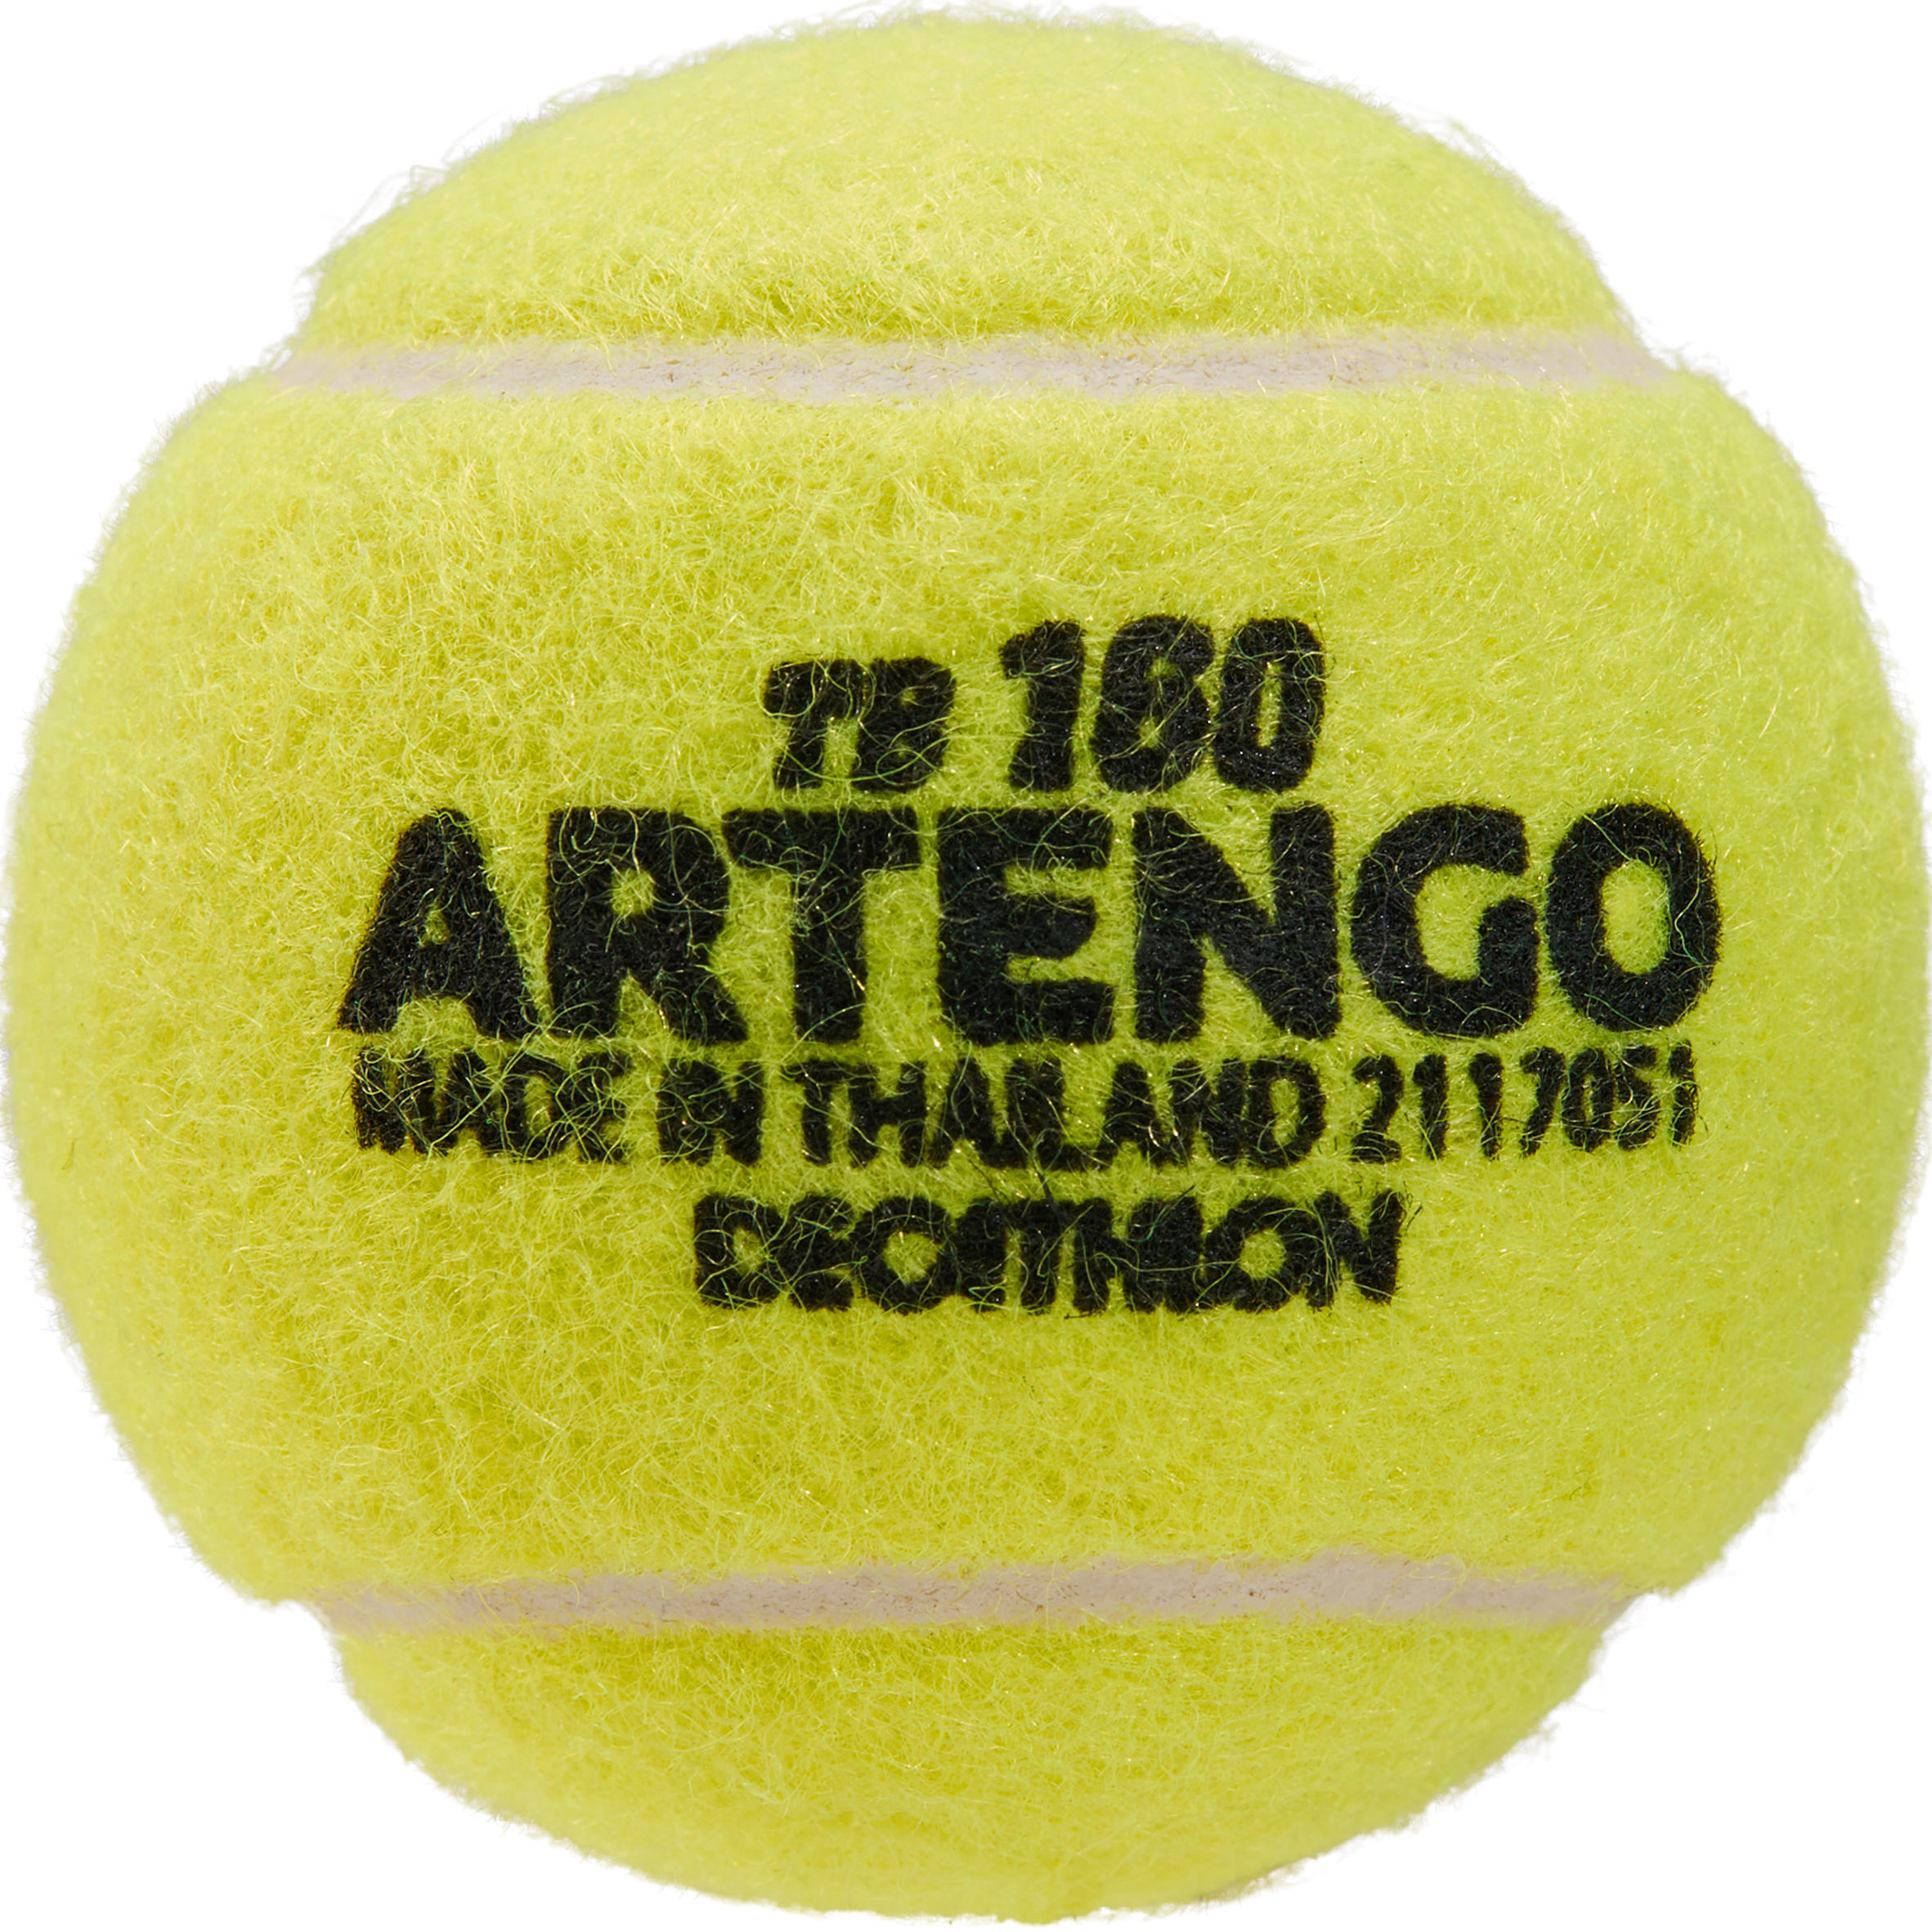 [ส่งฟรี ] ลูกเทนนิสรุ่น TB760 (แพ็ค 4 ลูก) Tennis Ball 4-Pack TB160  Sport tennis Tennis Ball  อุปกรณ์เทนนิสแท้ คุณภาพสูง โปรโมชั่นสุดคุ้ม